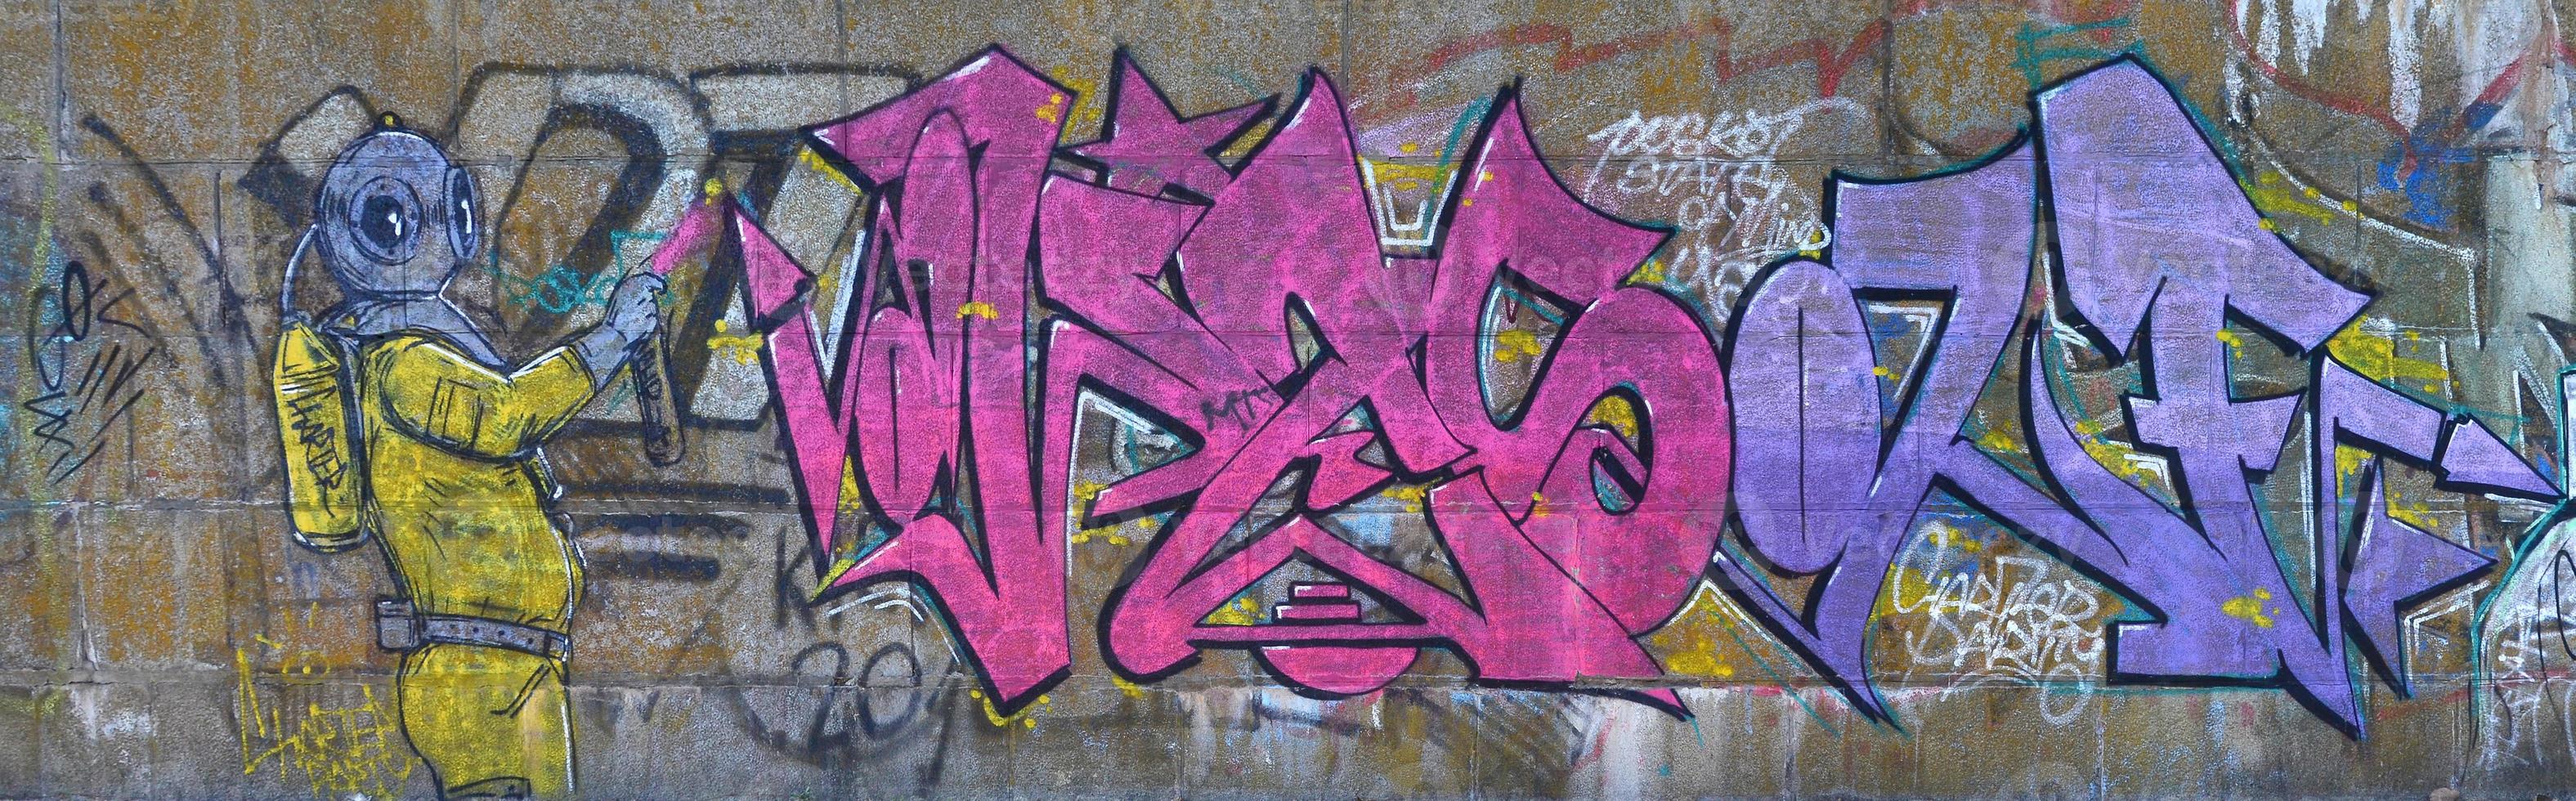 fragmento de dibujos de graffiti. la antigua muralla decorada con manchas de pintura al estilo de la cultura del arte callejero. buzo de miedo foto